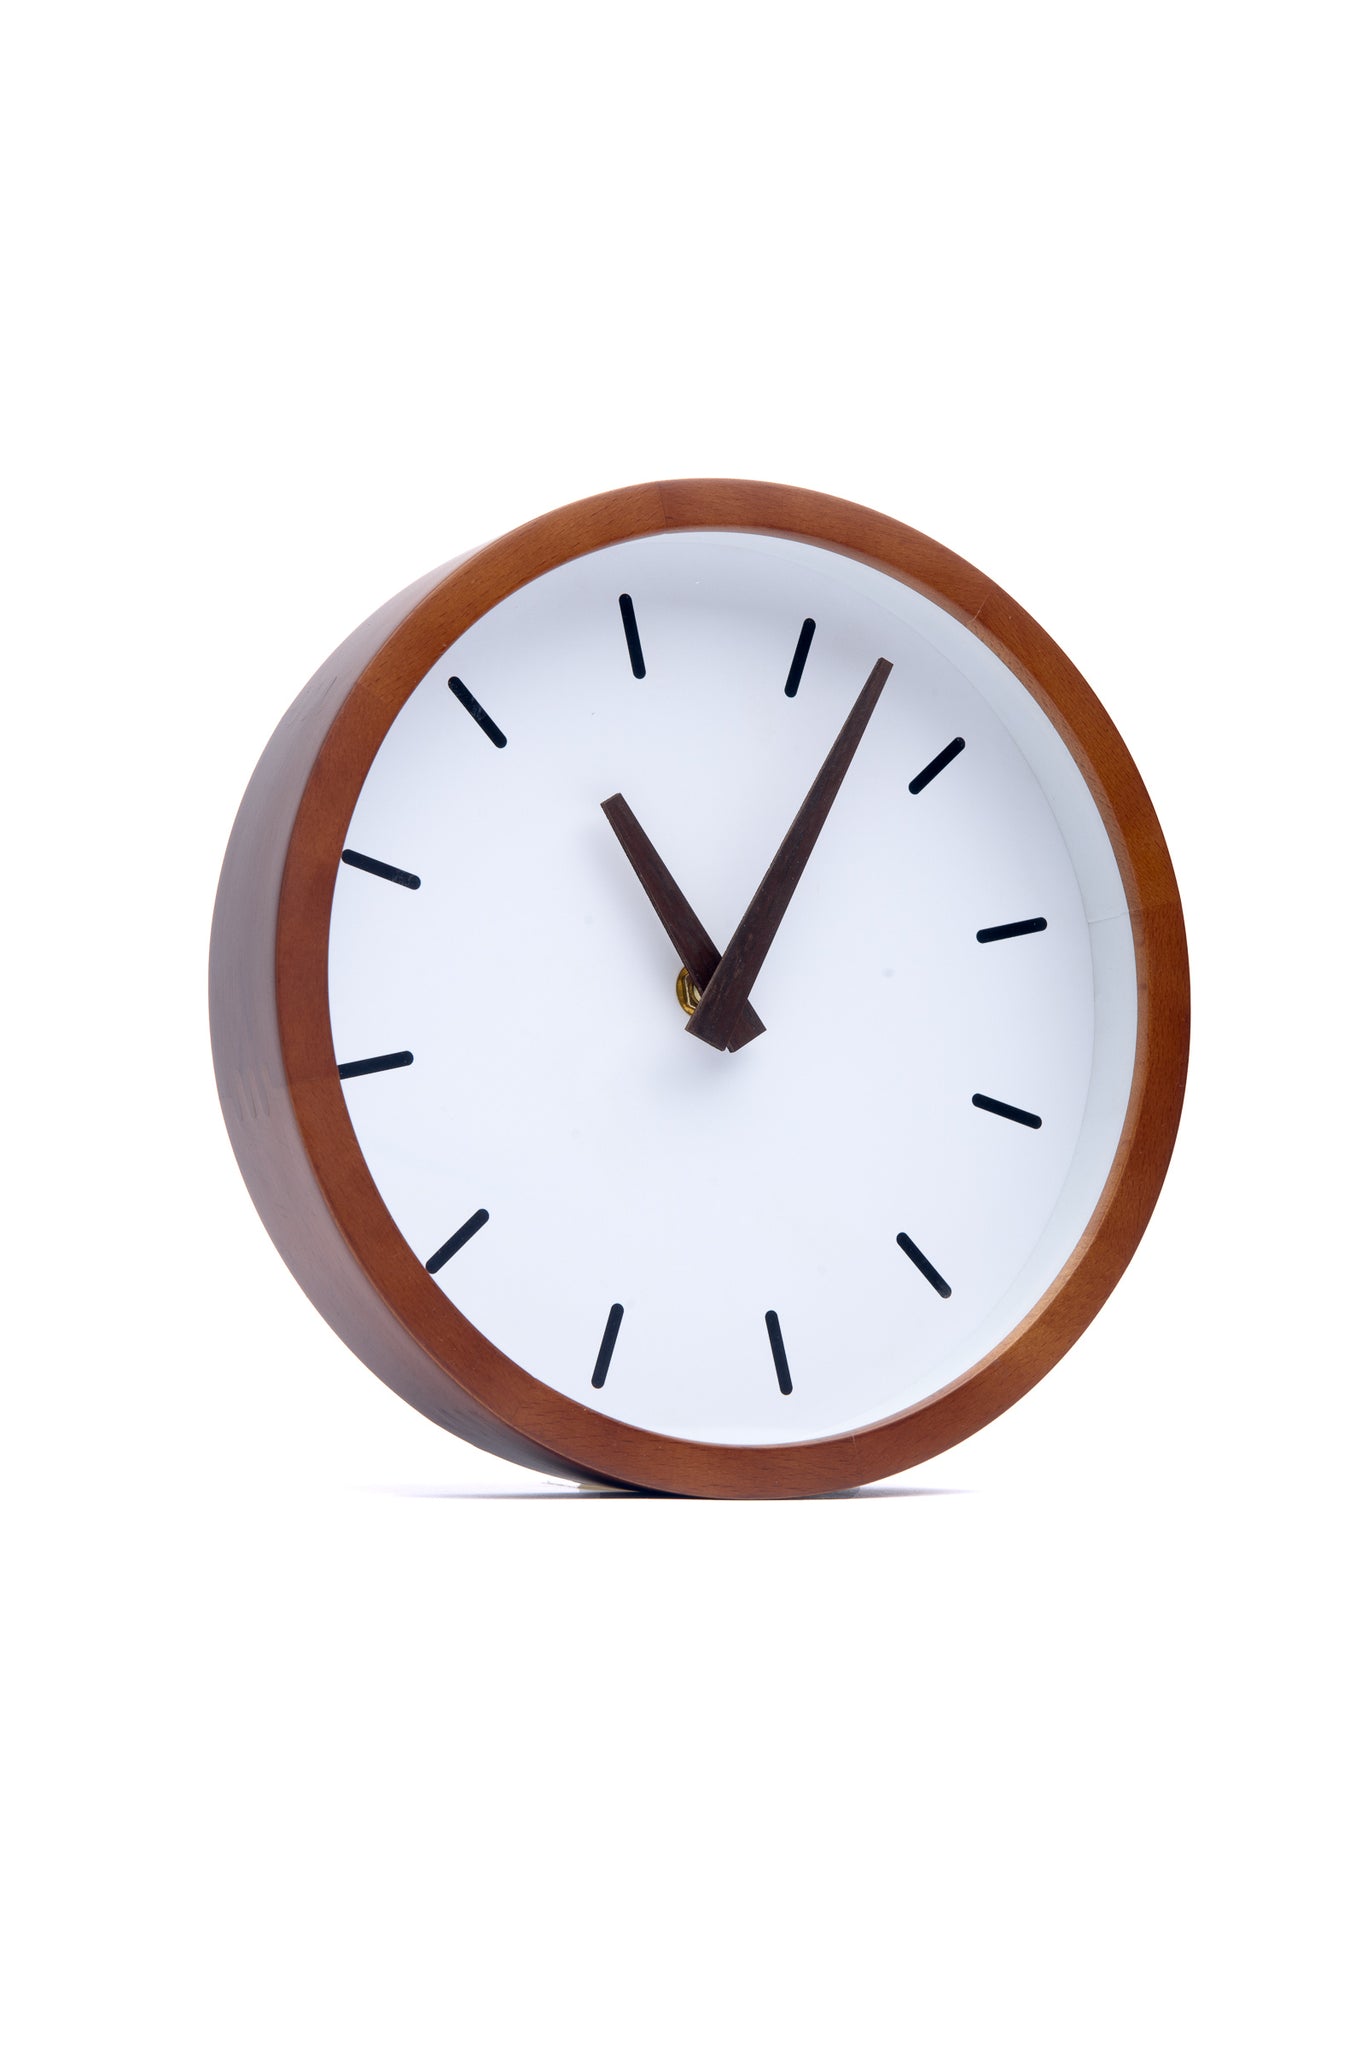 Driini Modern Wood Analog Wall Clock - (12)